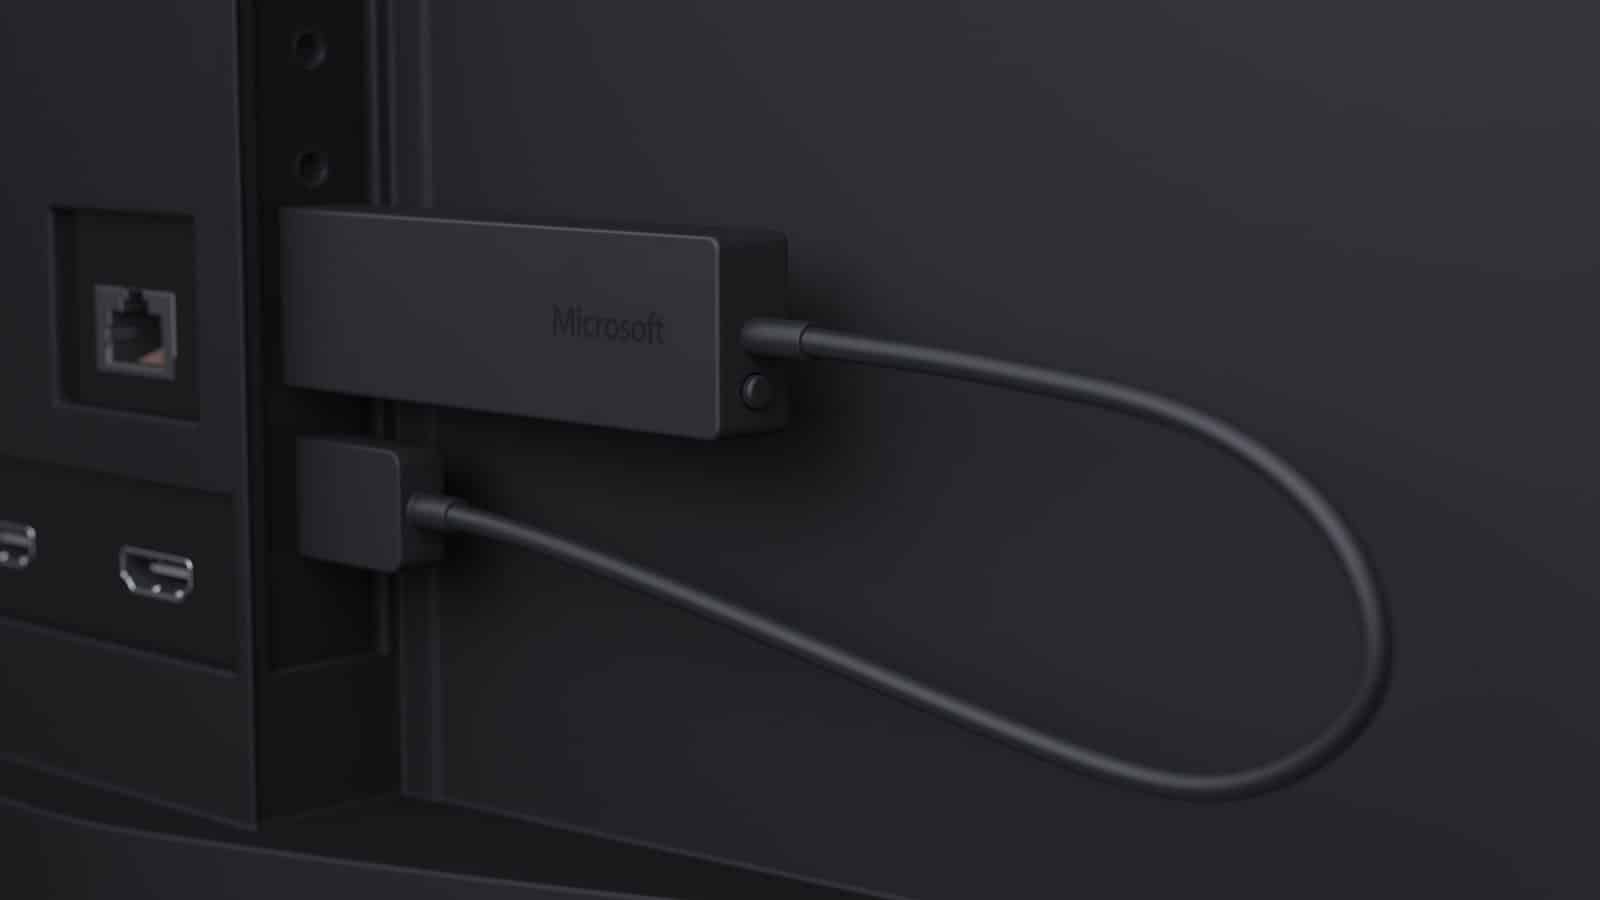 Microsoft Miracast Dongle